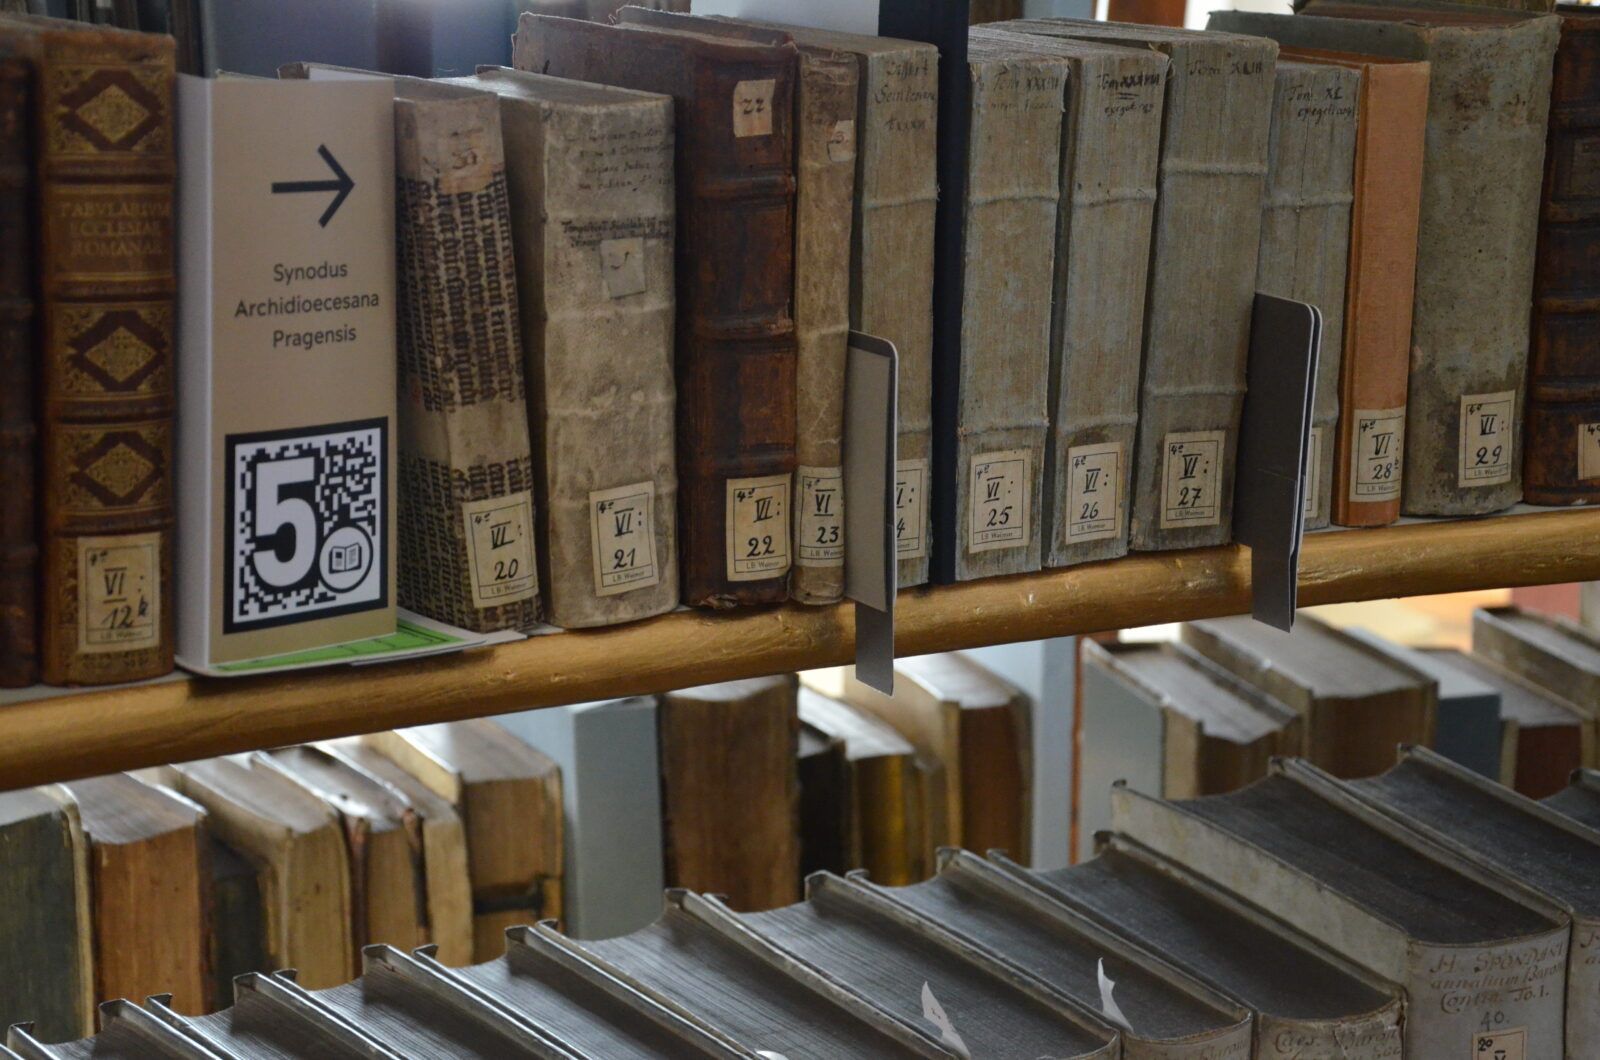 Bücherregal, in dem sich zwischen den historischen Büchern ein beigefarbenes Label mit AR-Marker, Buchtitel und Pfeil nach rechts befindet